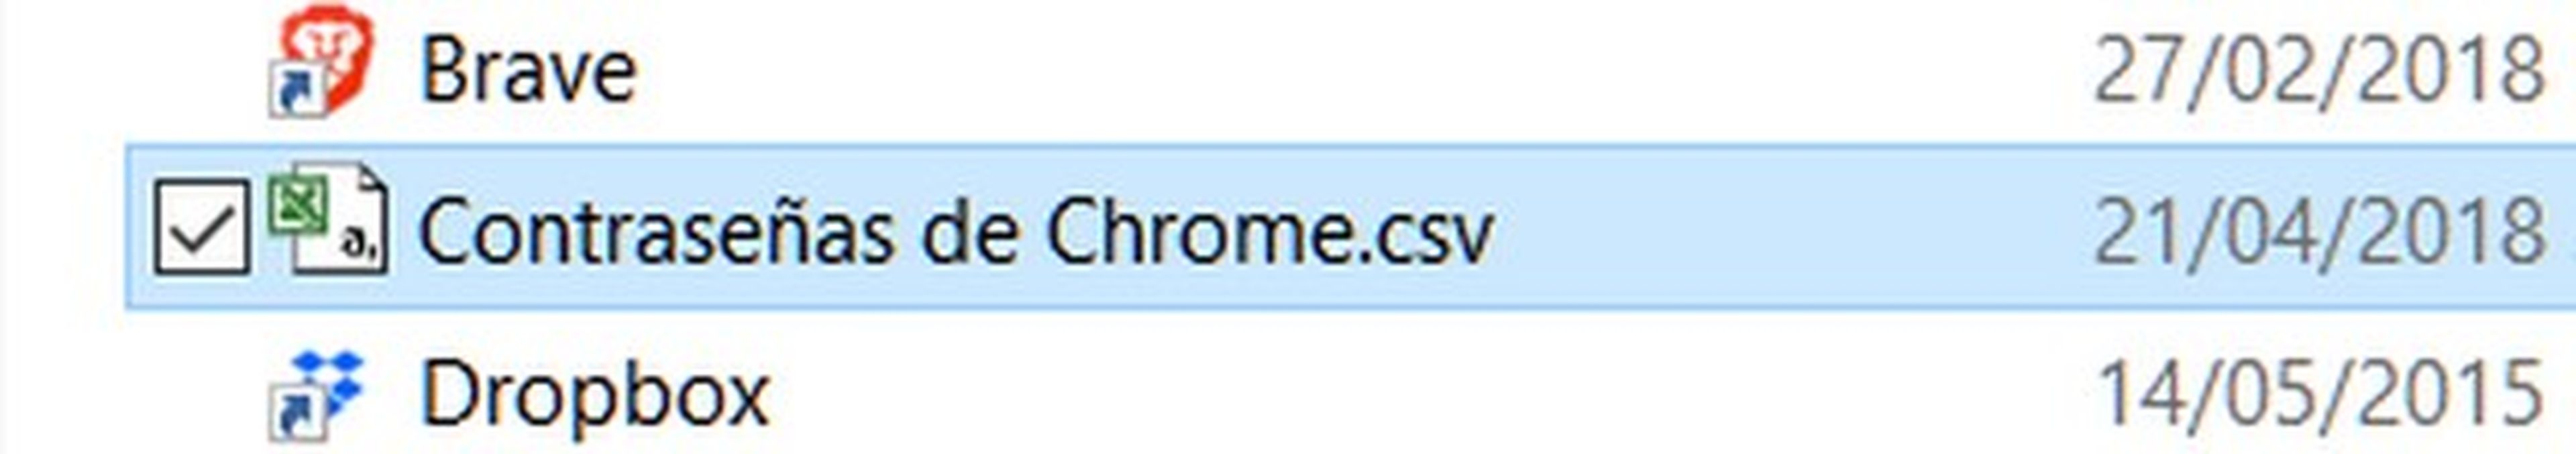 Cómo exportar contraseñas en Google Chrome